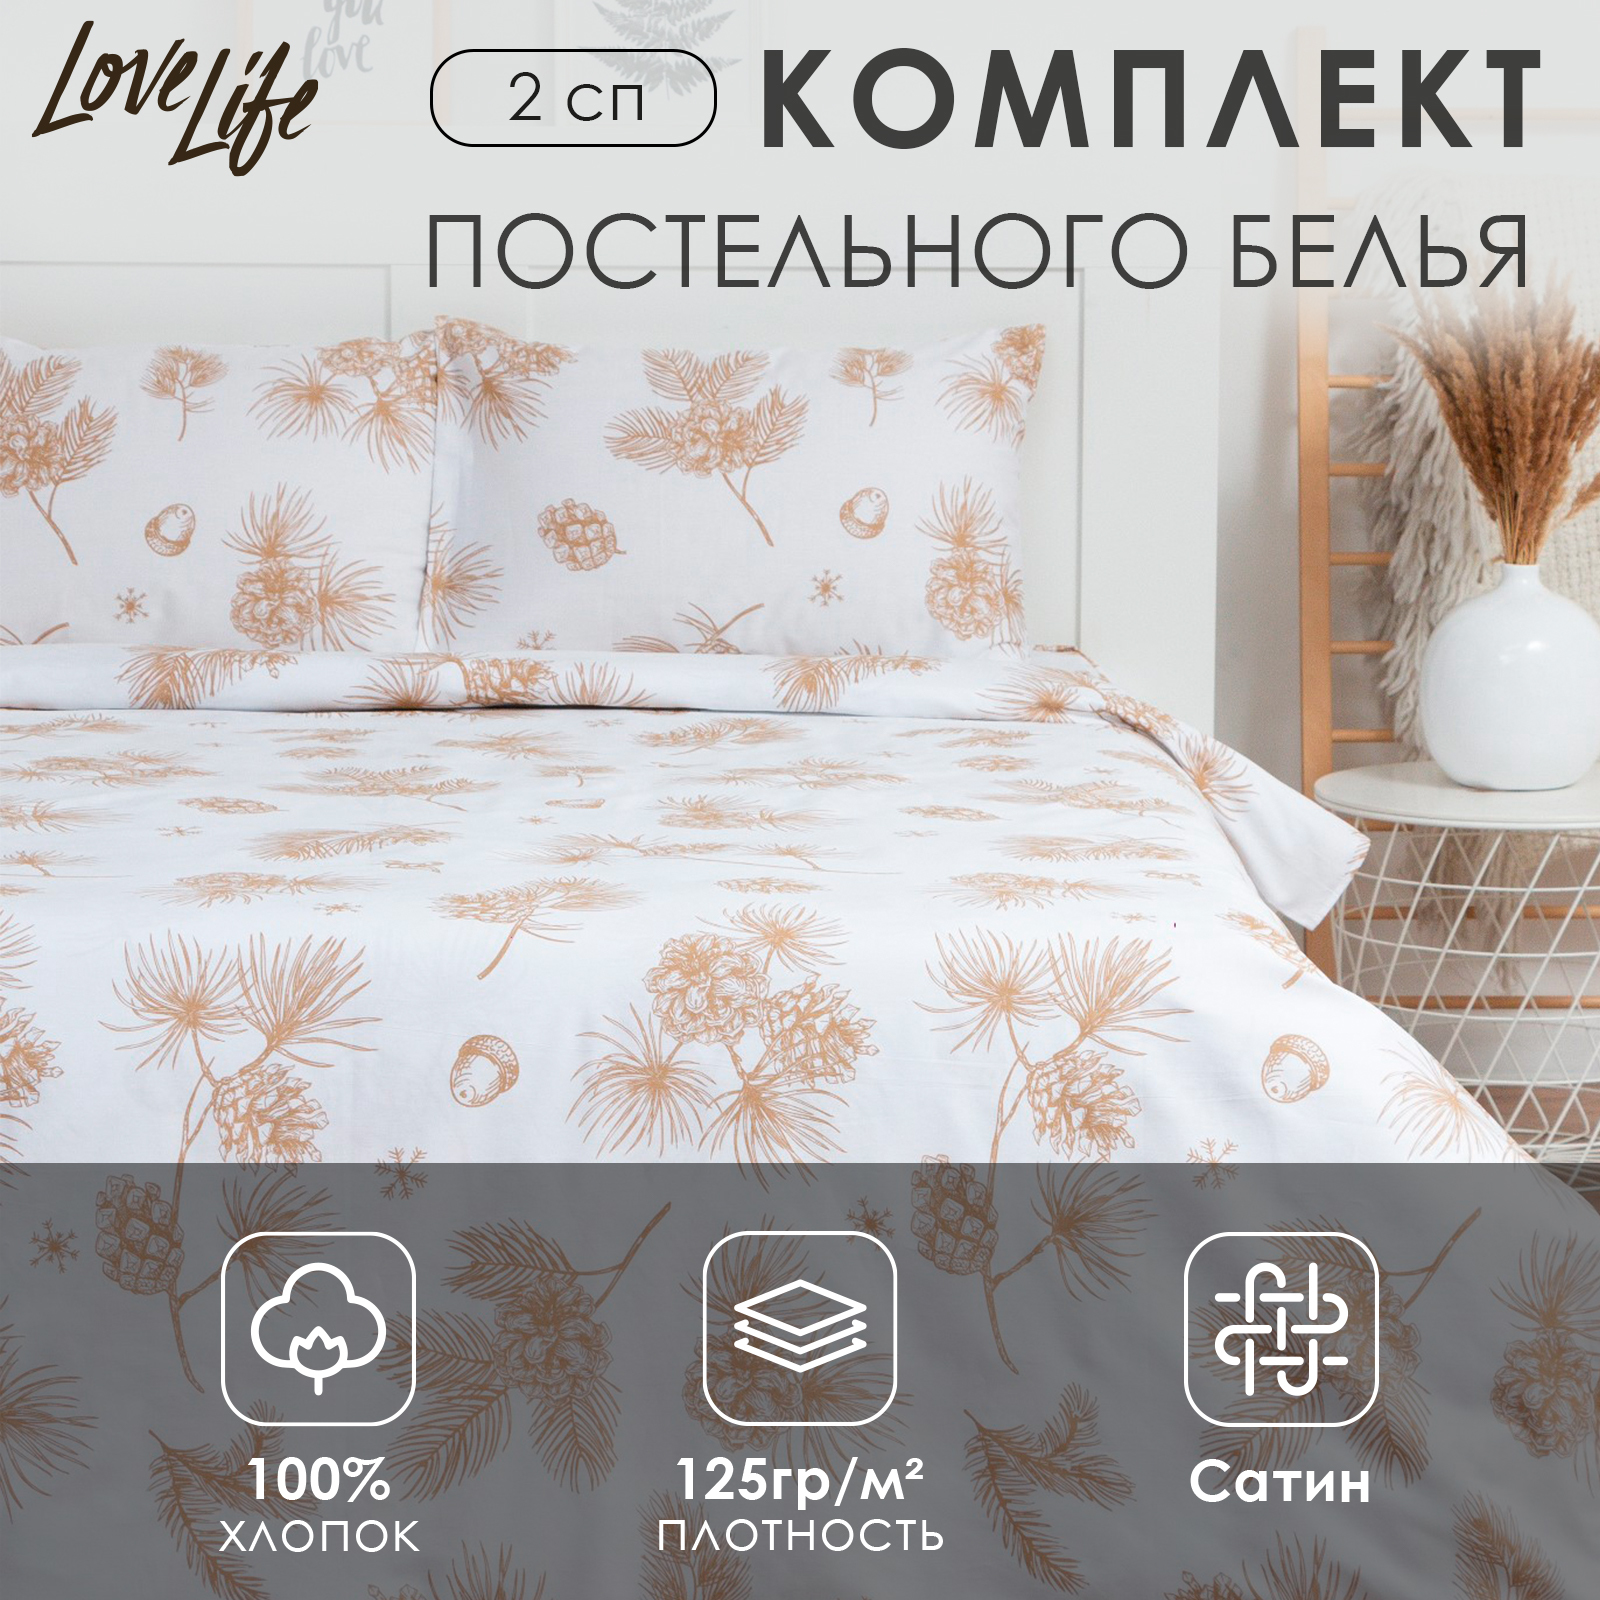 Комплект постельного белья LoveLife 2сп Шишки 100%хлопок сатин - фото 2